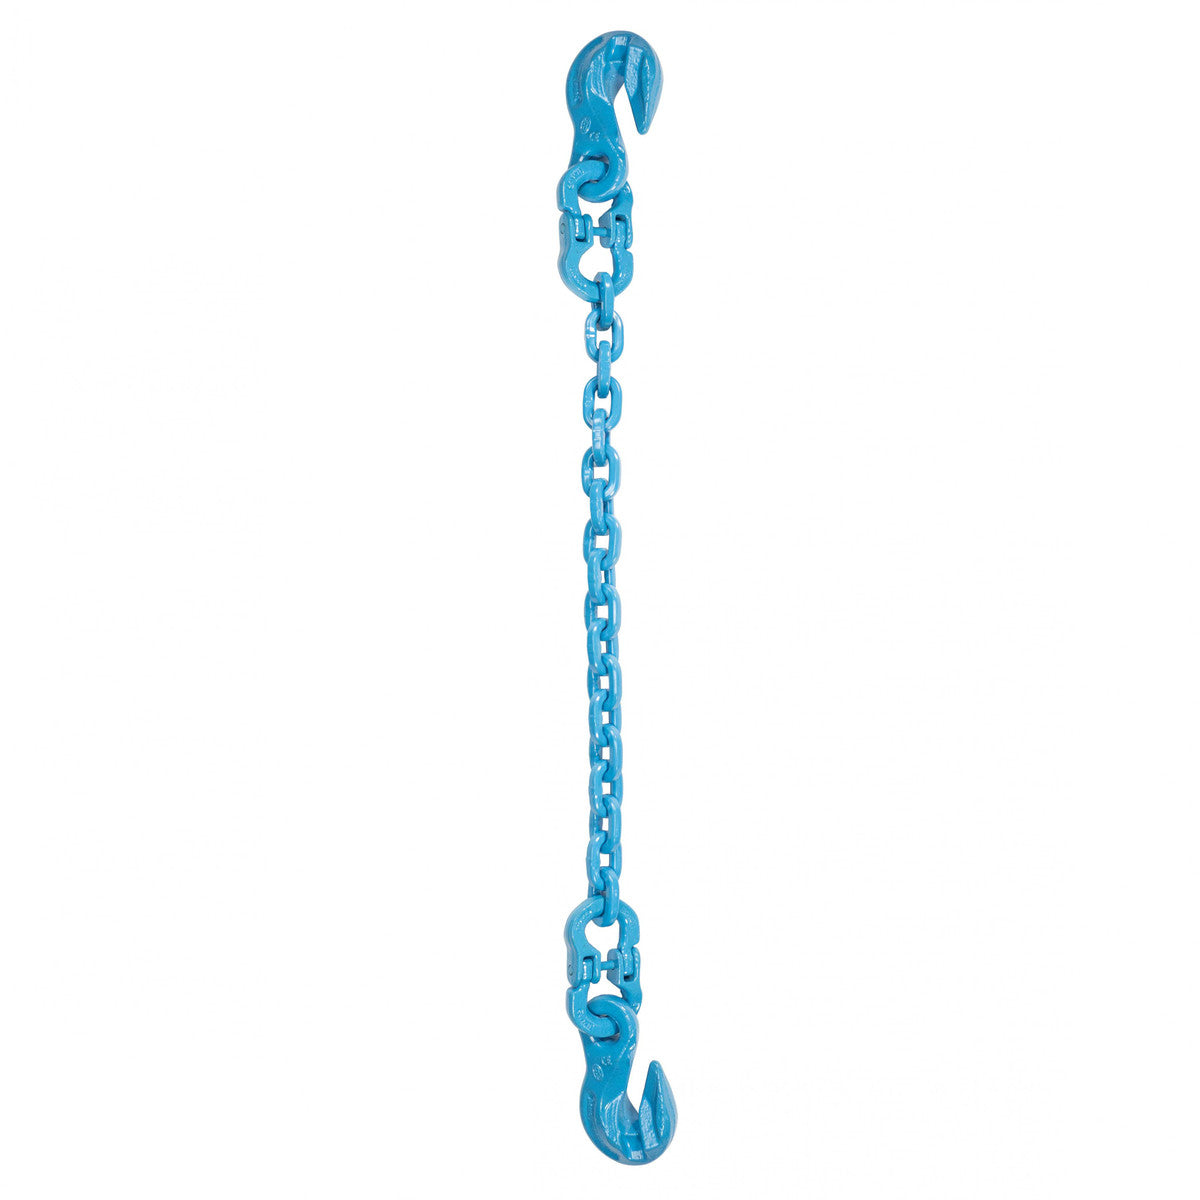 9/32" x 4' - Pewag Single Leg Chain Sling w/ Grab & Grab Hooks - Grade 120